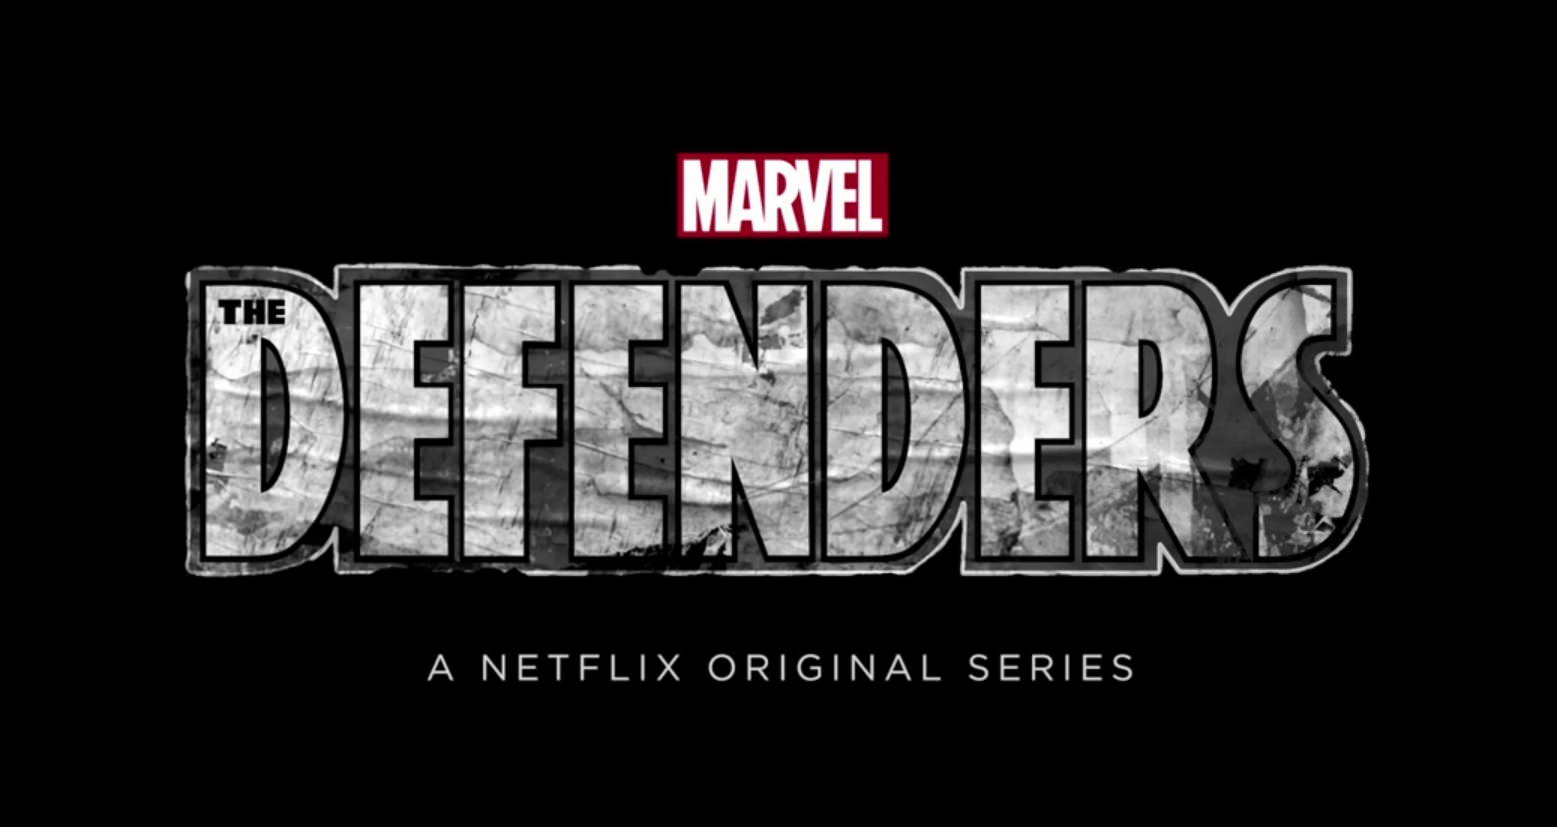 comic-con 2016 The Defenders: Marvel rivela il logo e un teaser trailer